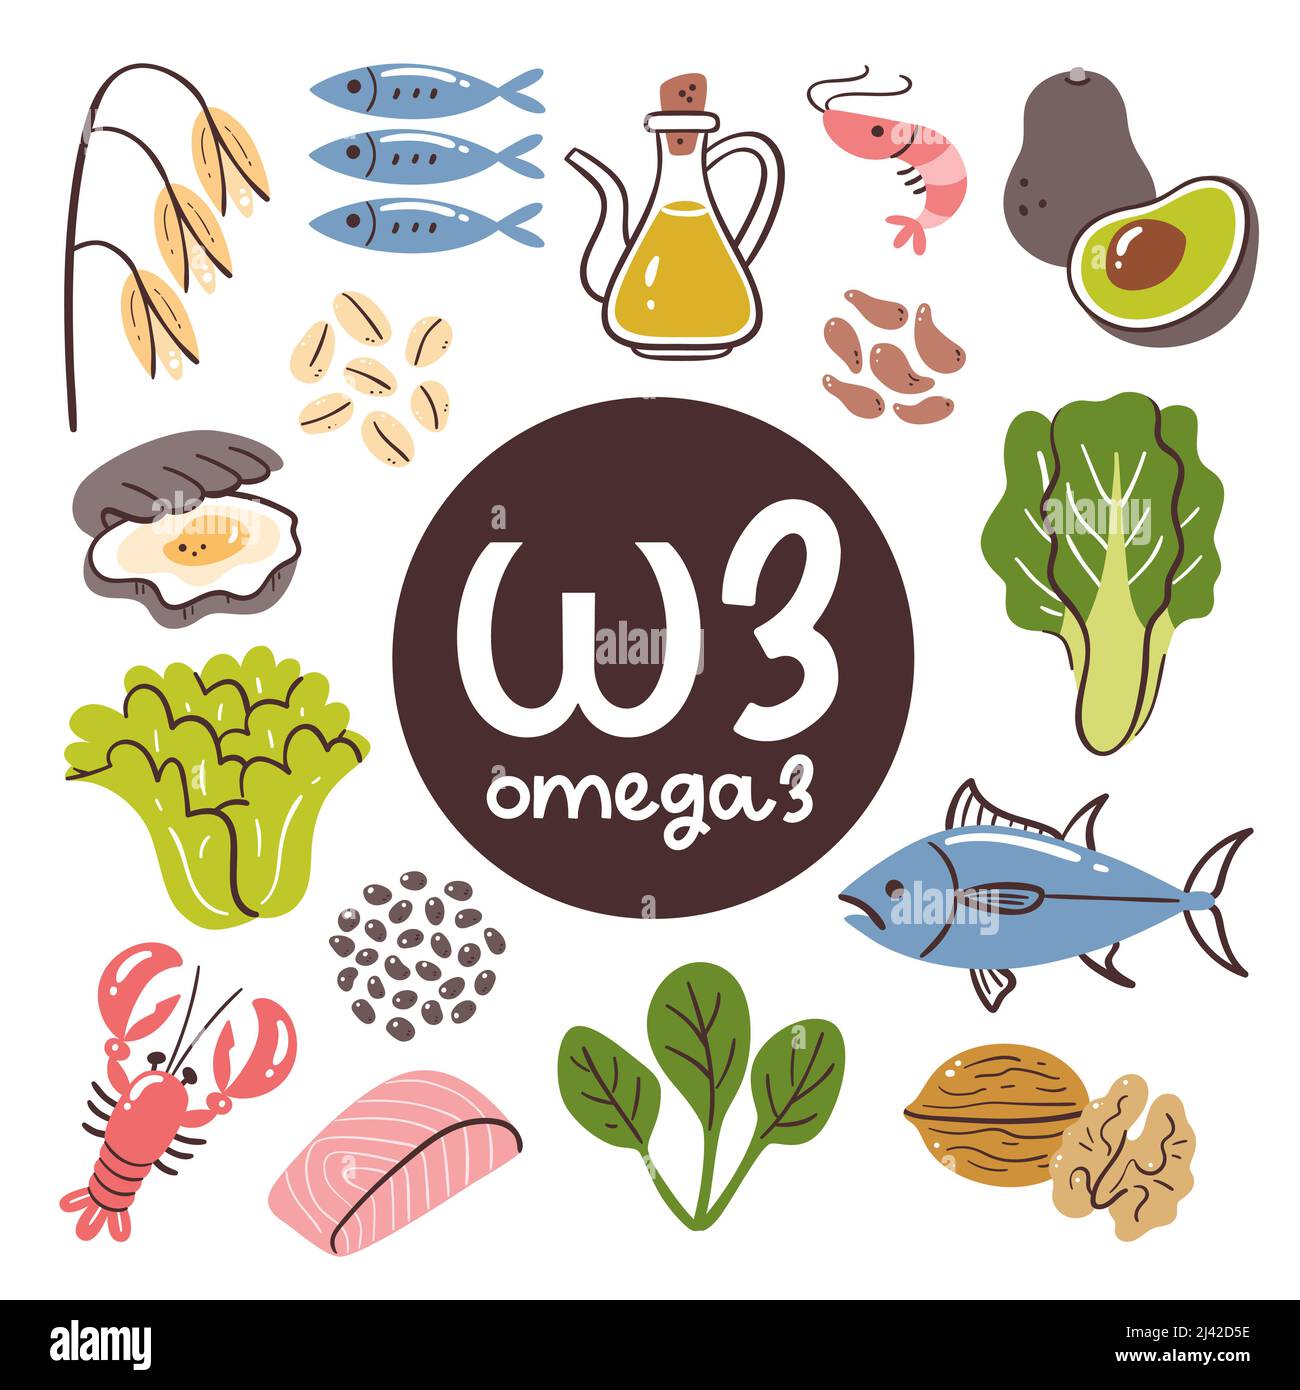 Produits alimentaires avec un niveau élevé d'Omega 3. Ingrédients de cuisson. Légumes, fruits de mer, huile, céréales, noix. Illustration de Vecteur